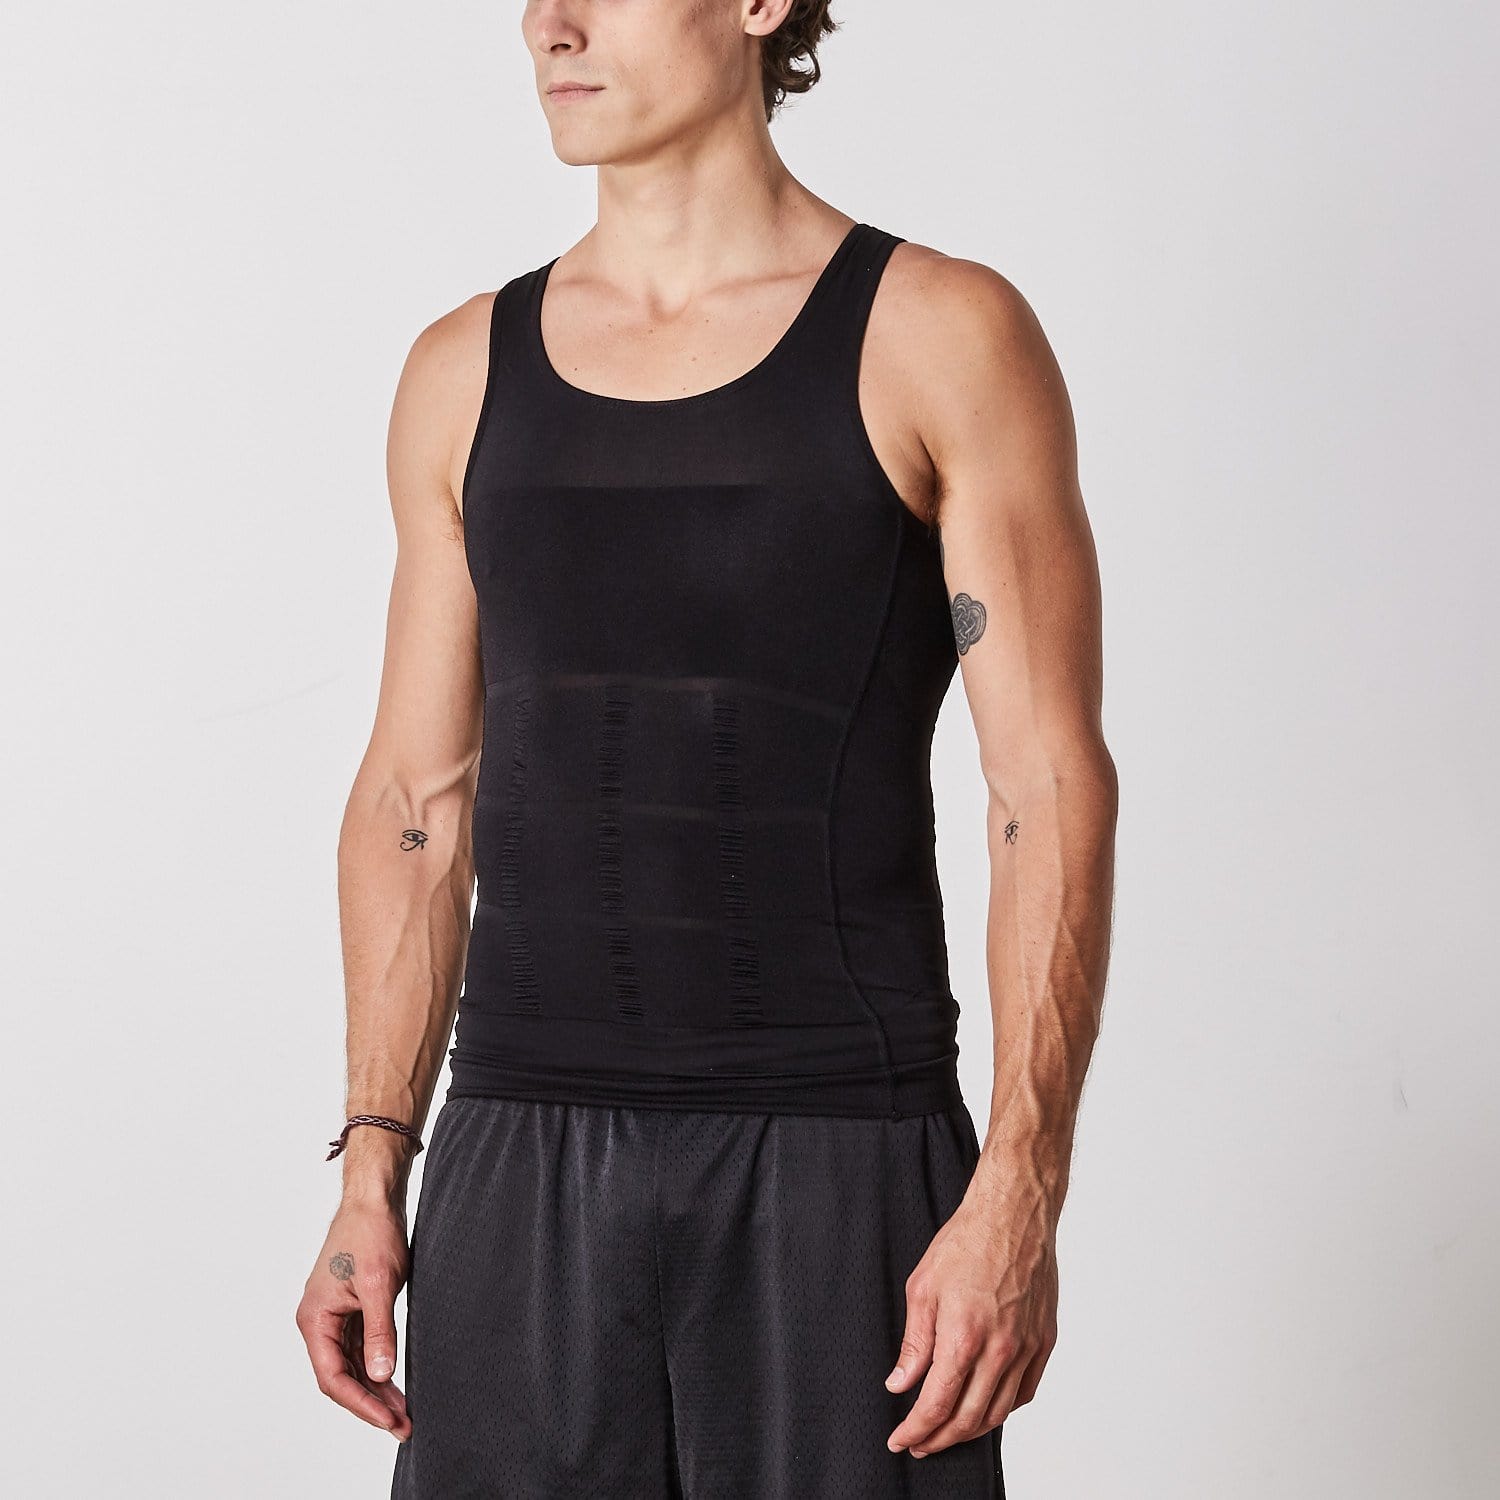 Men Compression Slimming Body Shaper Vest - Black Prices